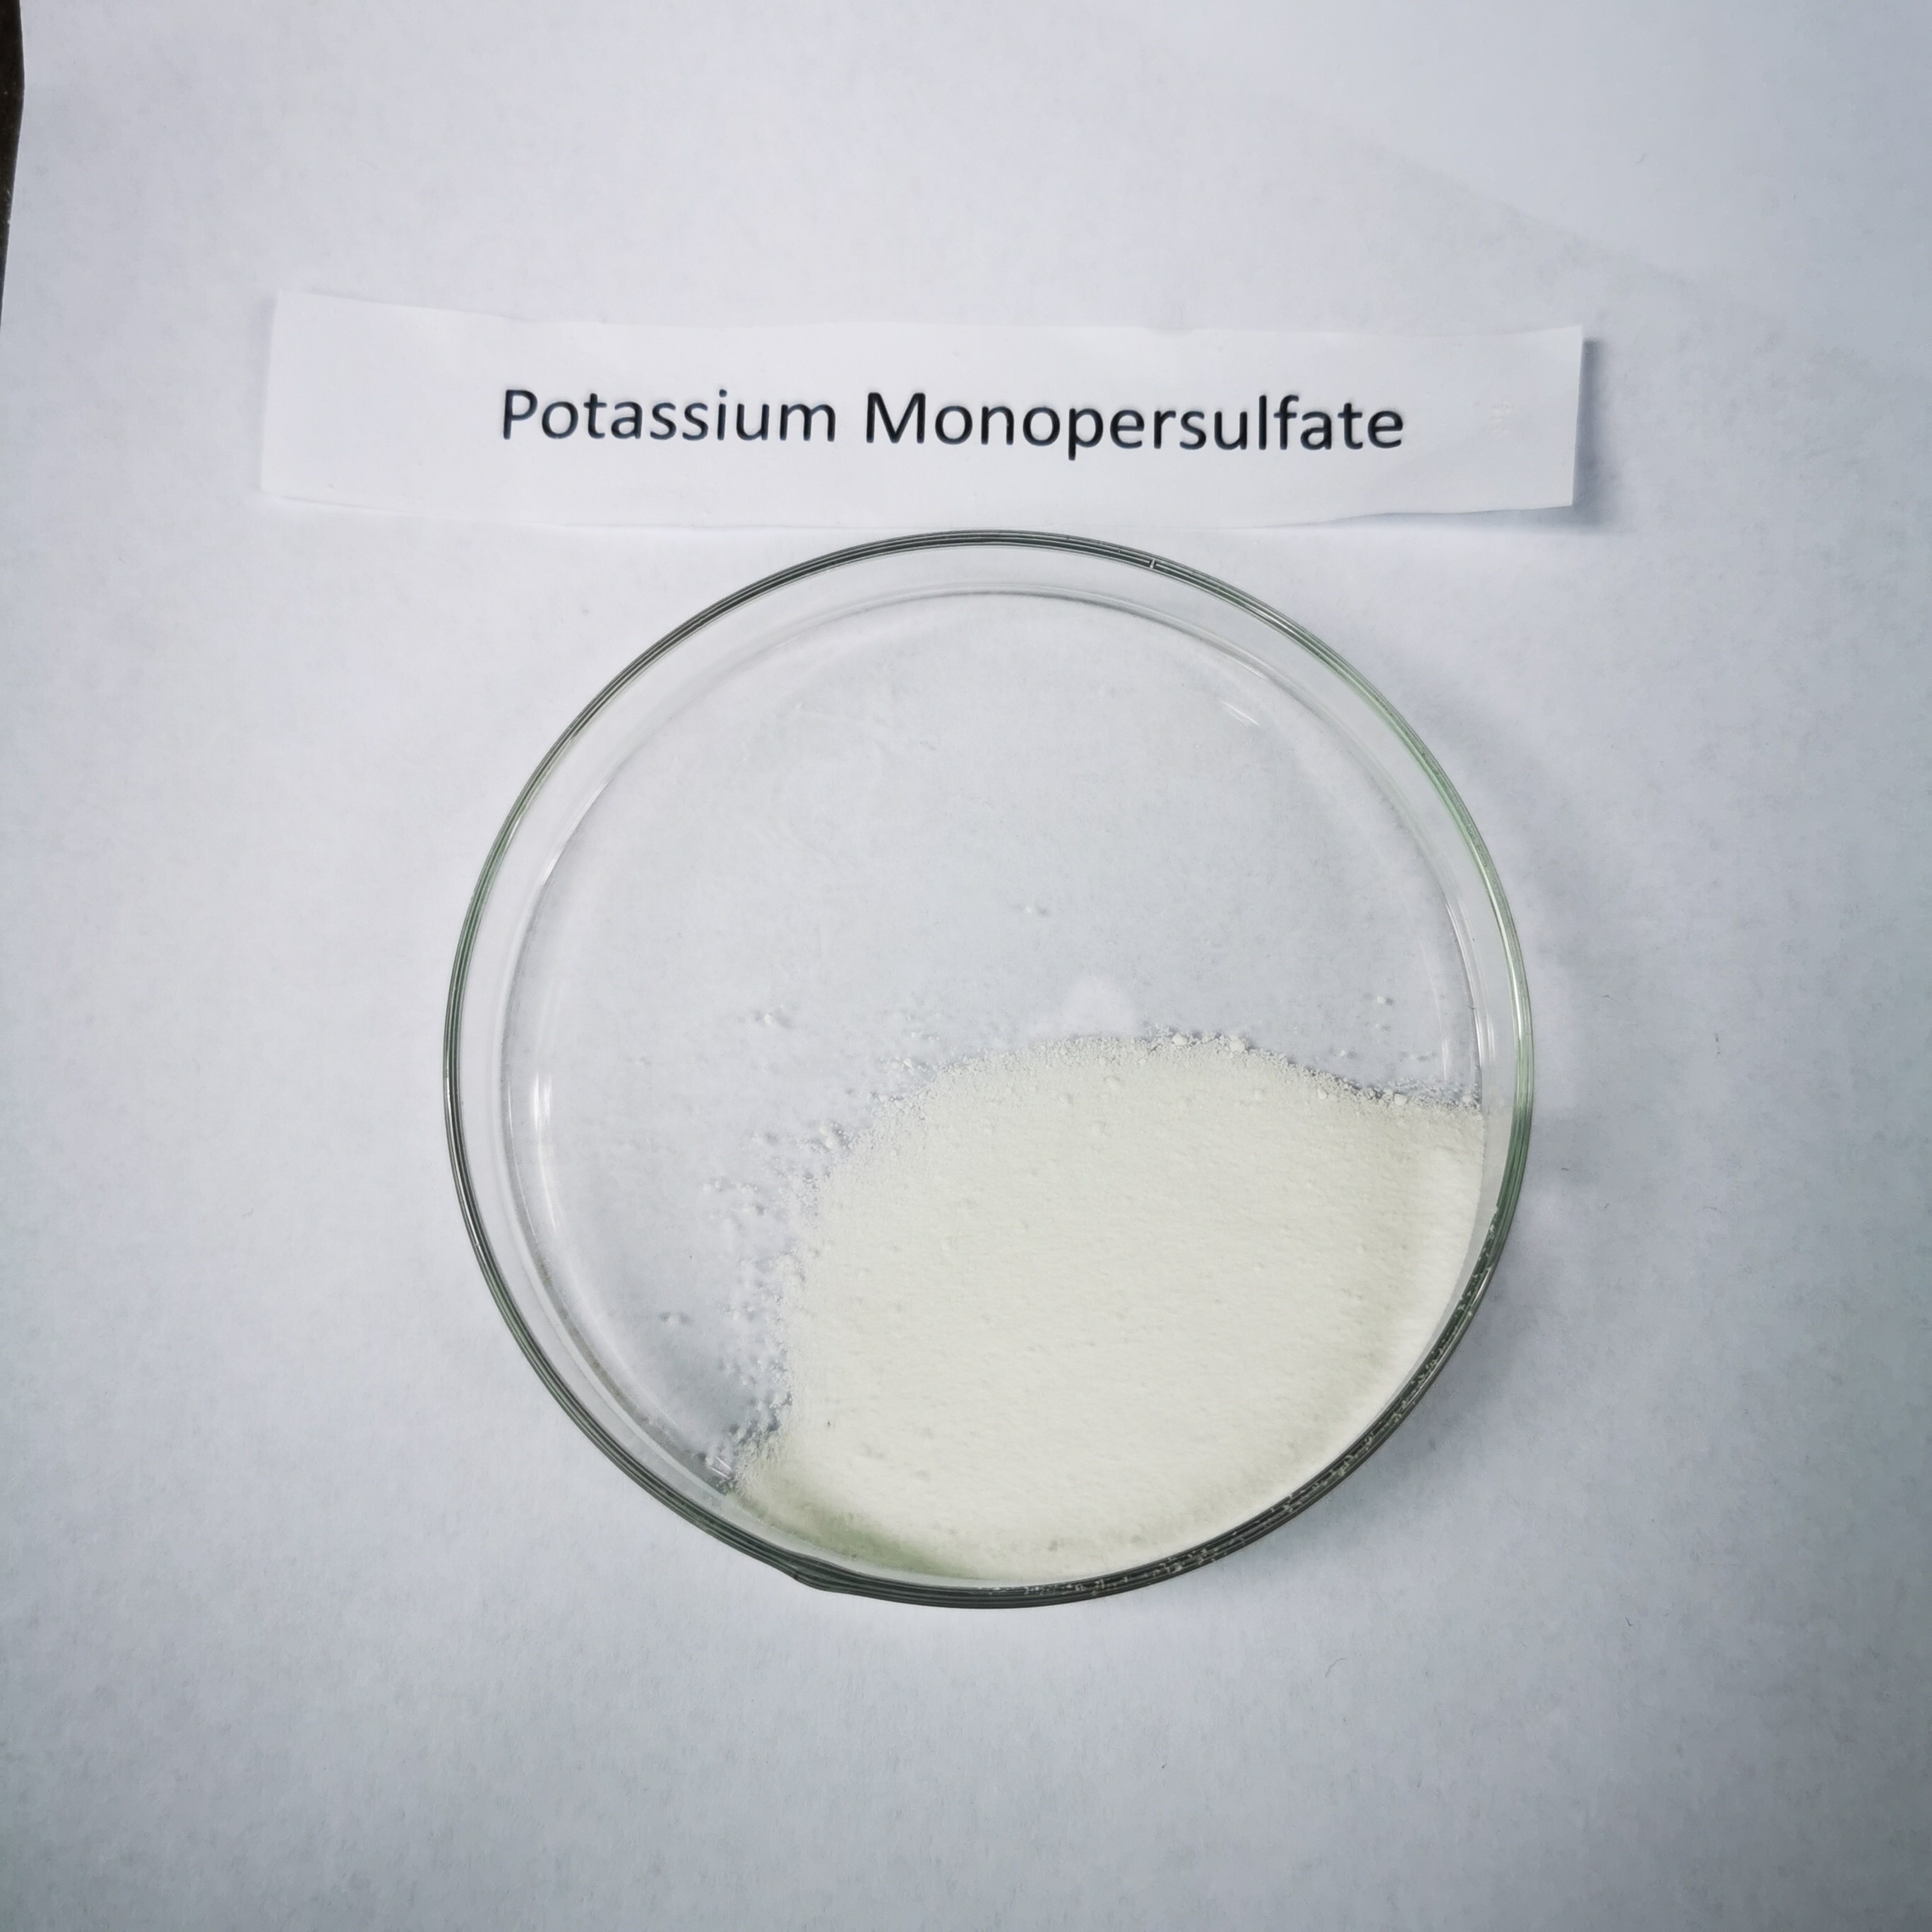 بيروكسيمونوسولفوريك حمض البوتاسيوم الملح غير الكلور صدمة القائمة لصناعة سبا